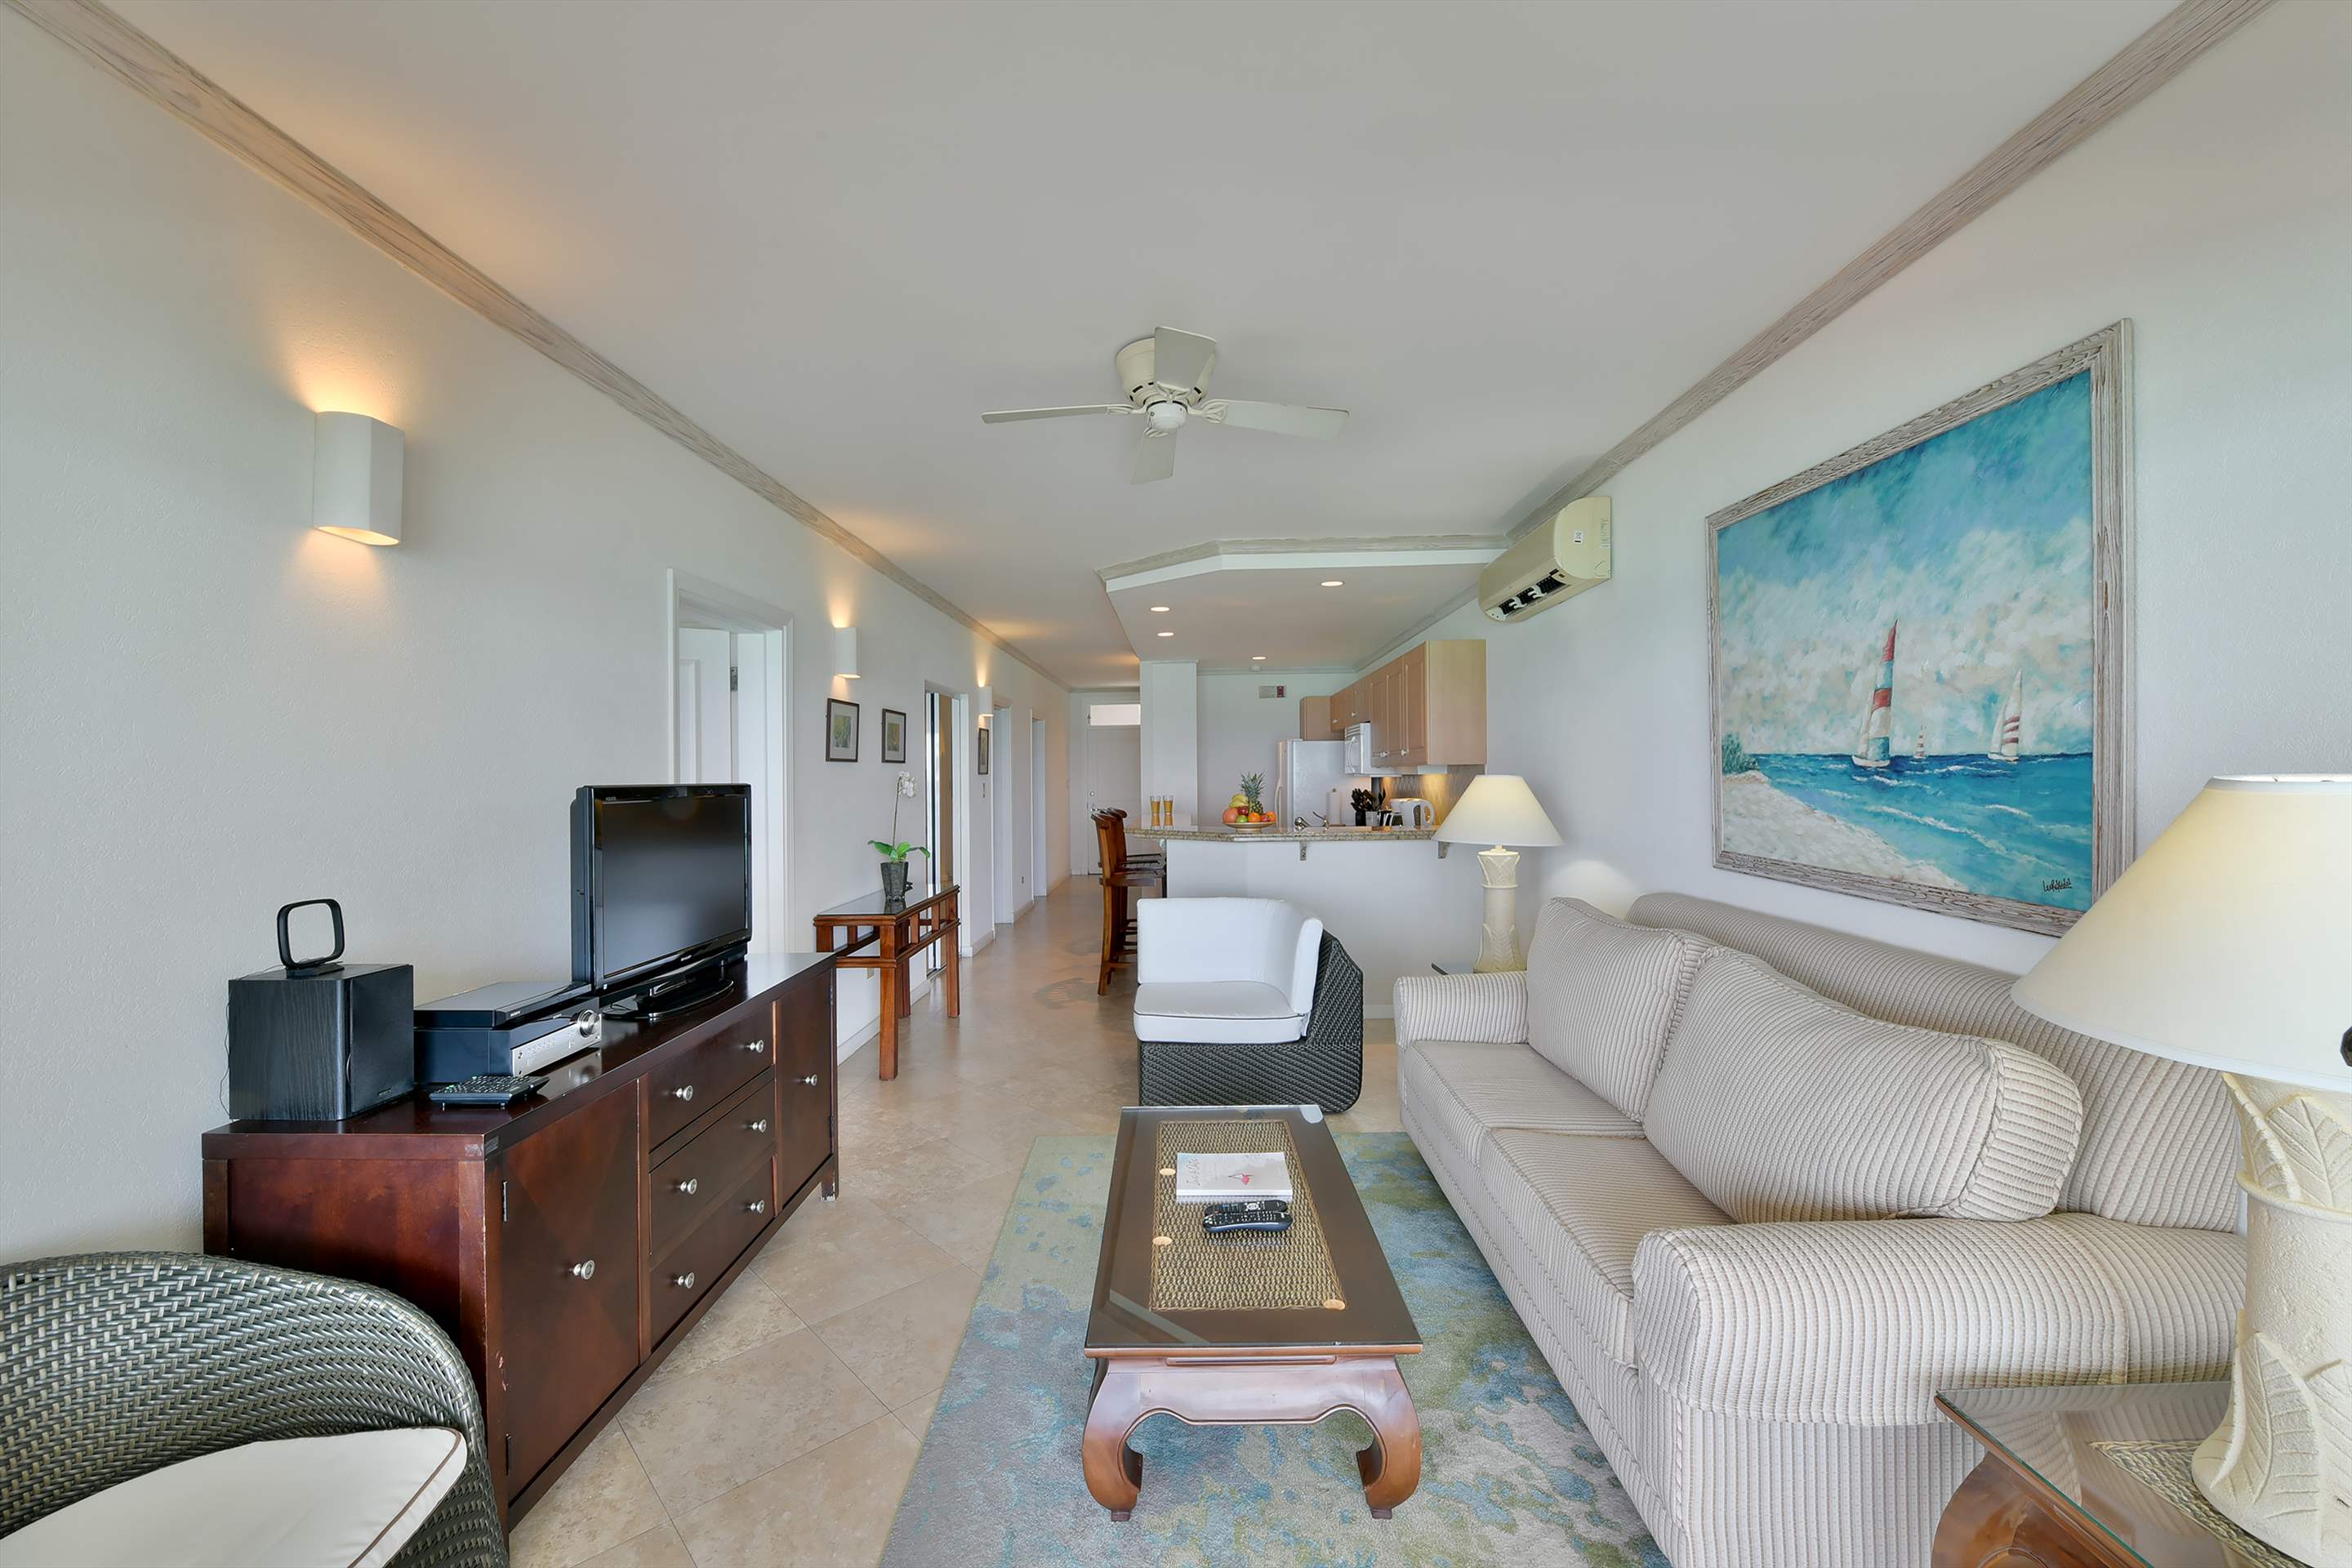 Maxwell Beach Villas 501, 2 bedroom, 2 bedroom villa in St. Lawrence Gap & South Coast, Barbados Photo #5